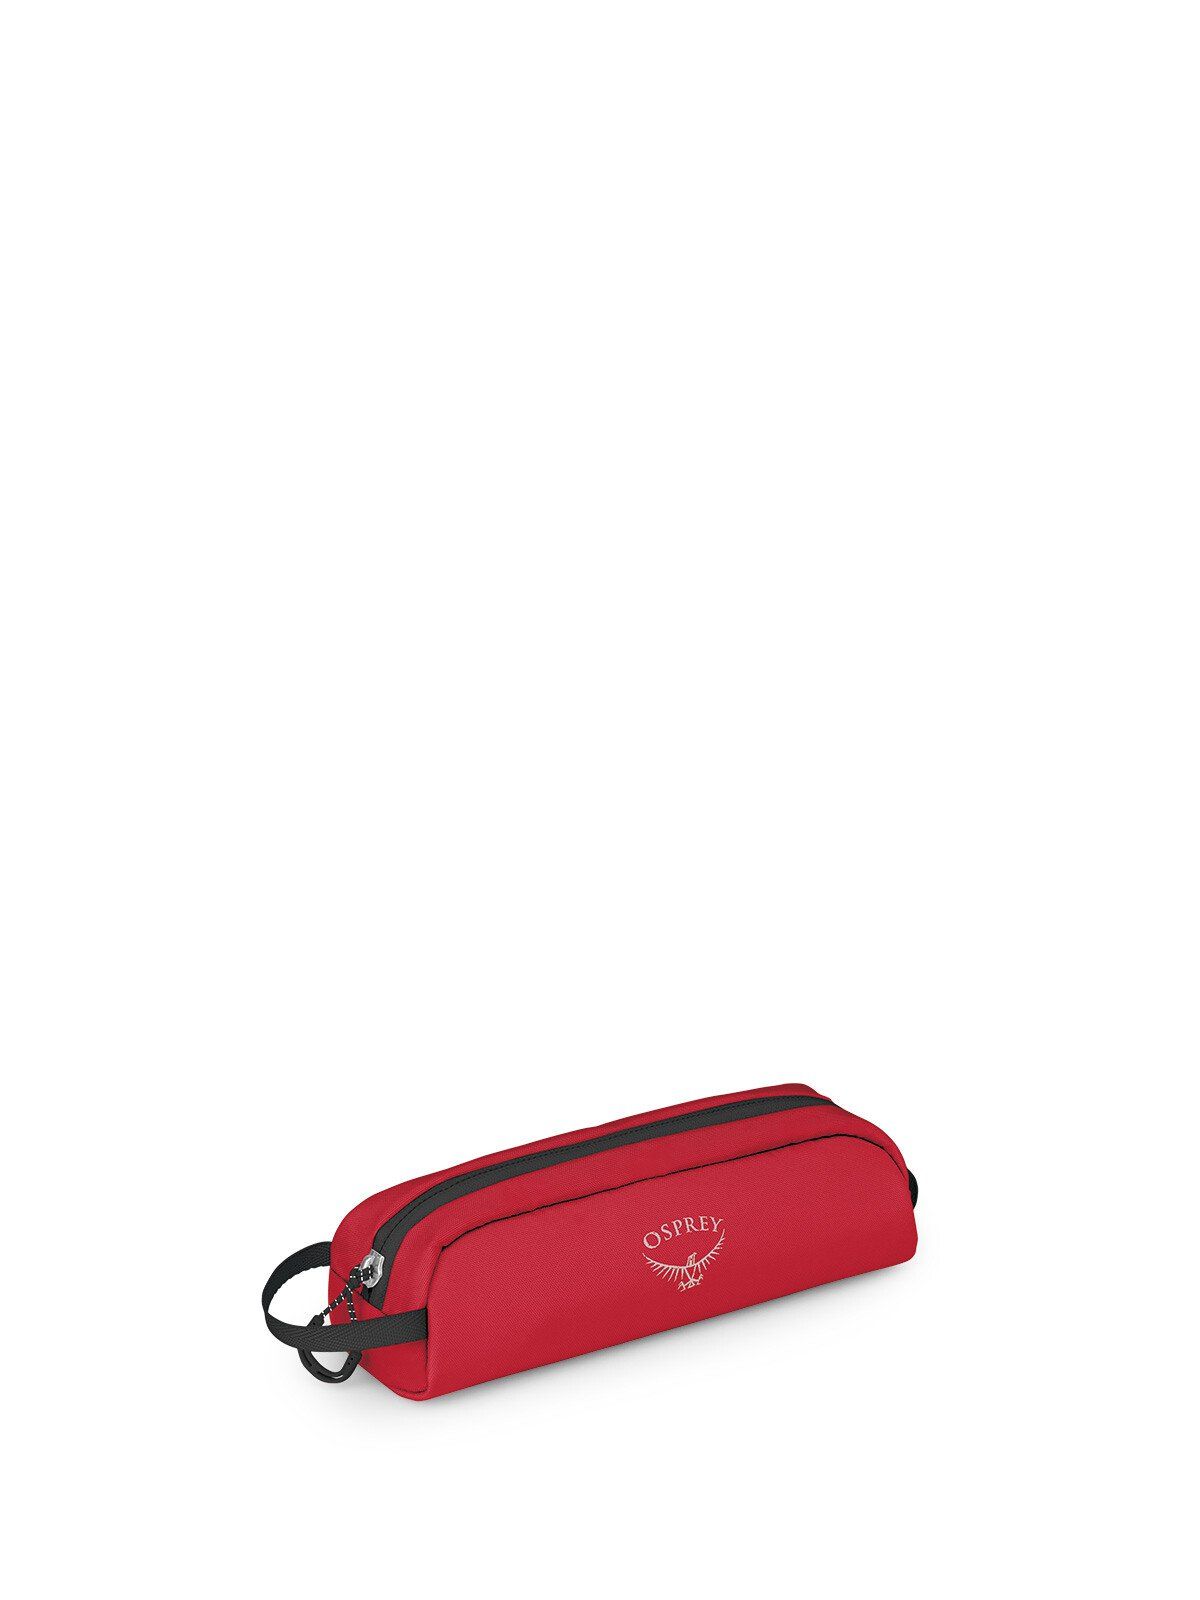 Image of Osprey Luggage Customization Kit